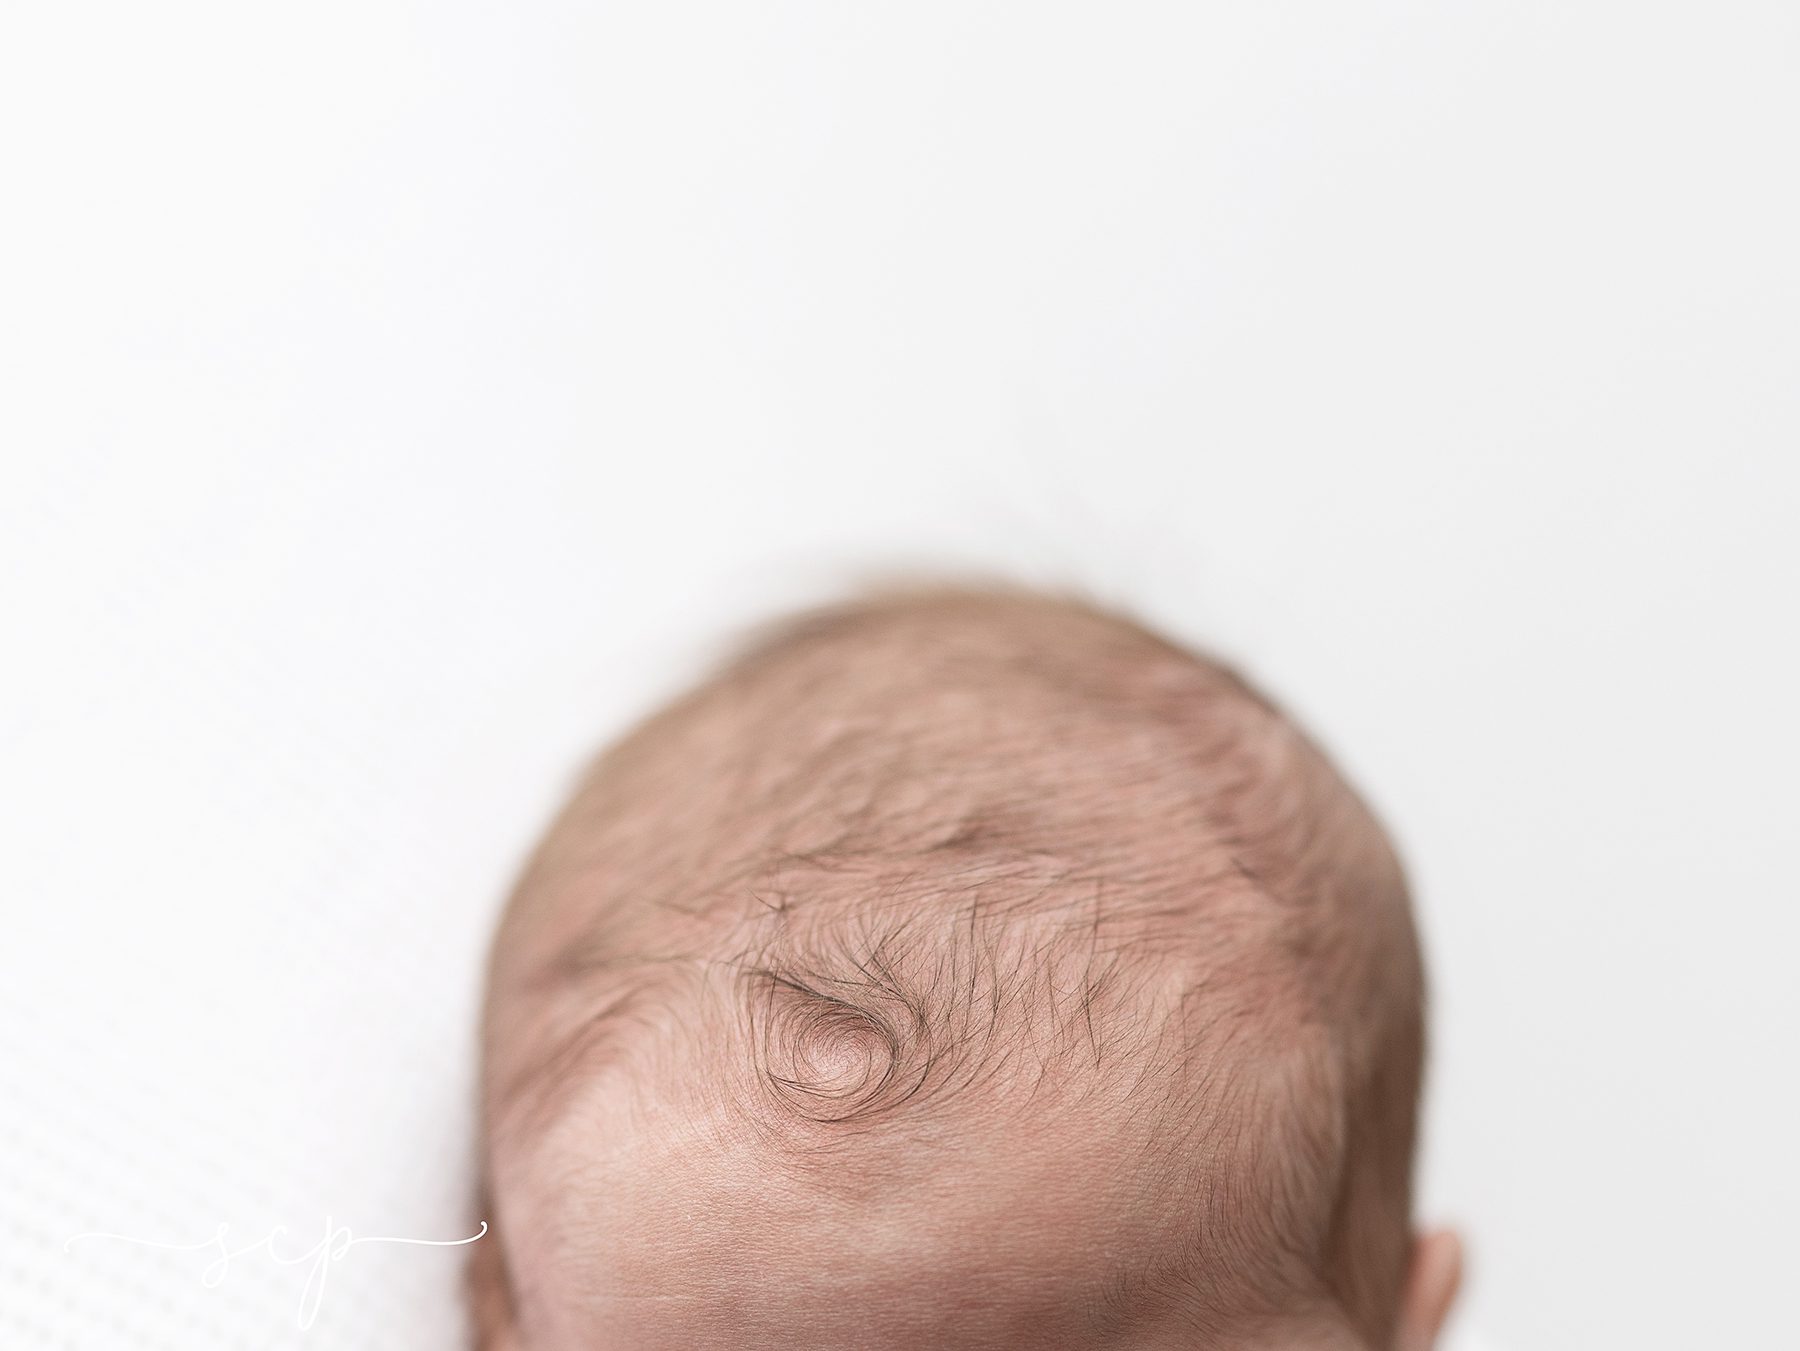 choosing a newborn photographer